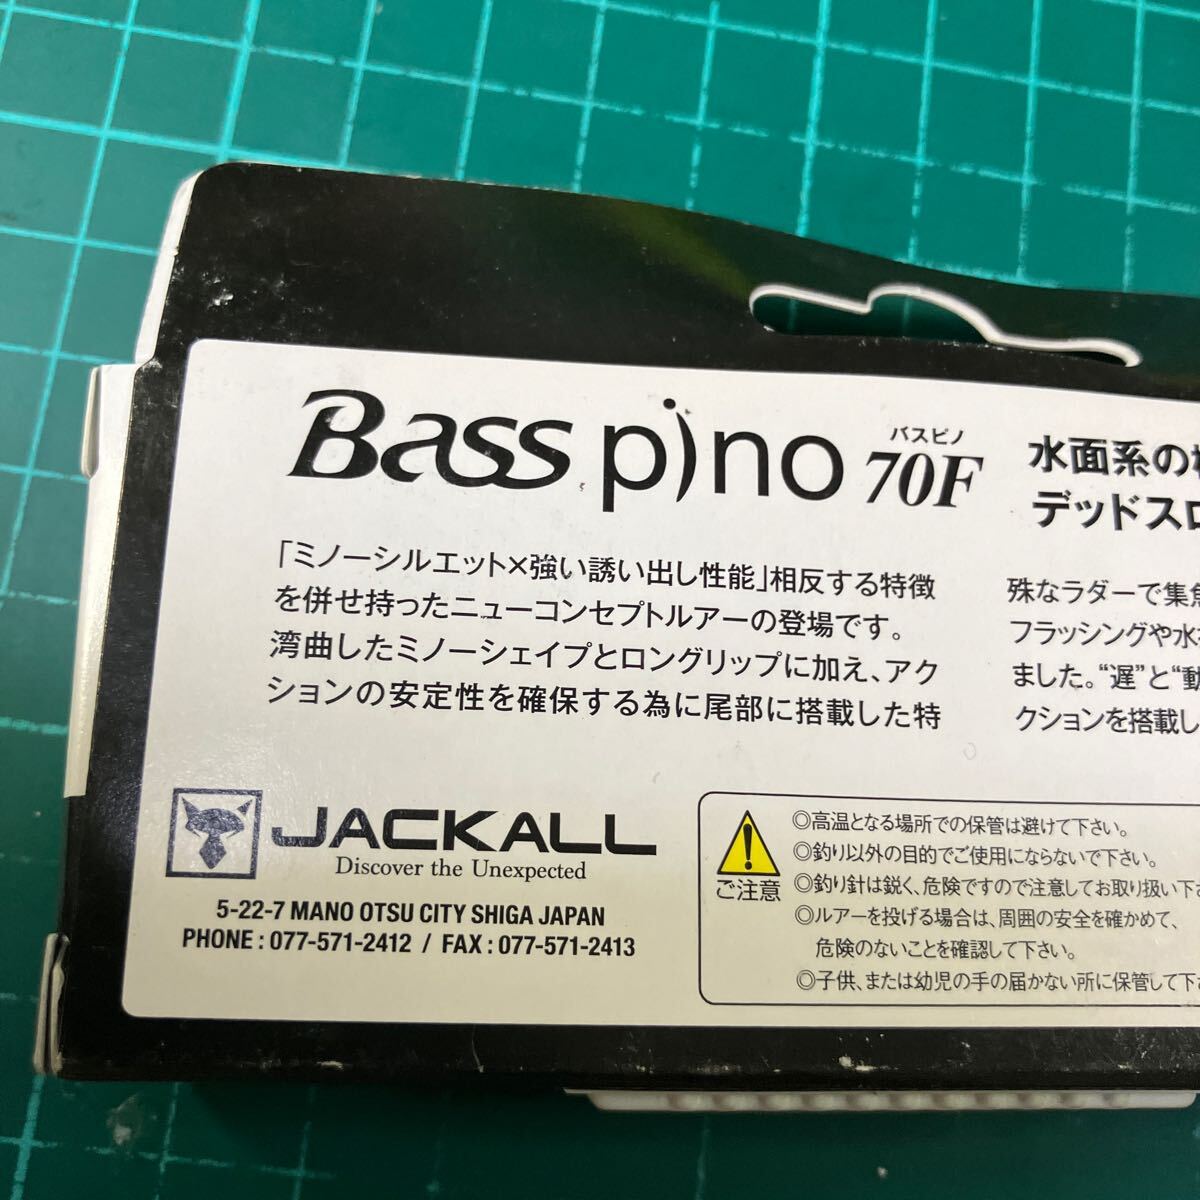 BASS PINO 70F 4.5g ナチュラルゴーストワカサギ_画像5